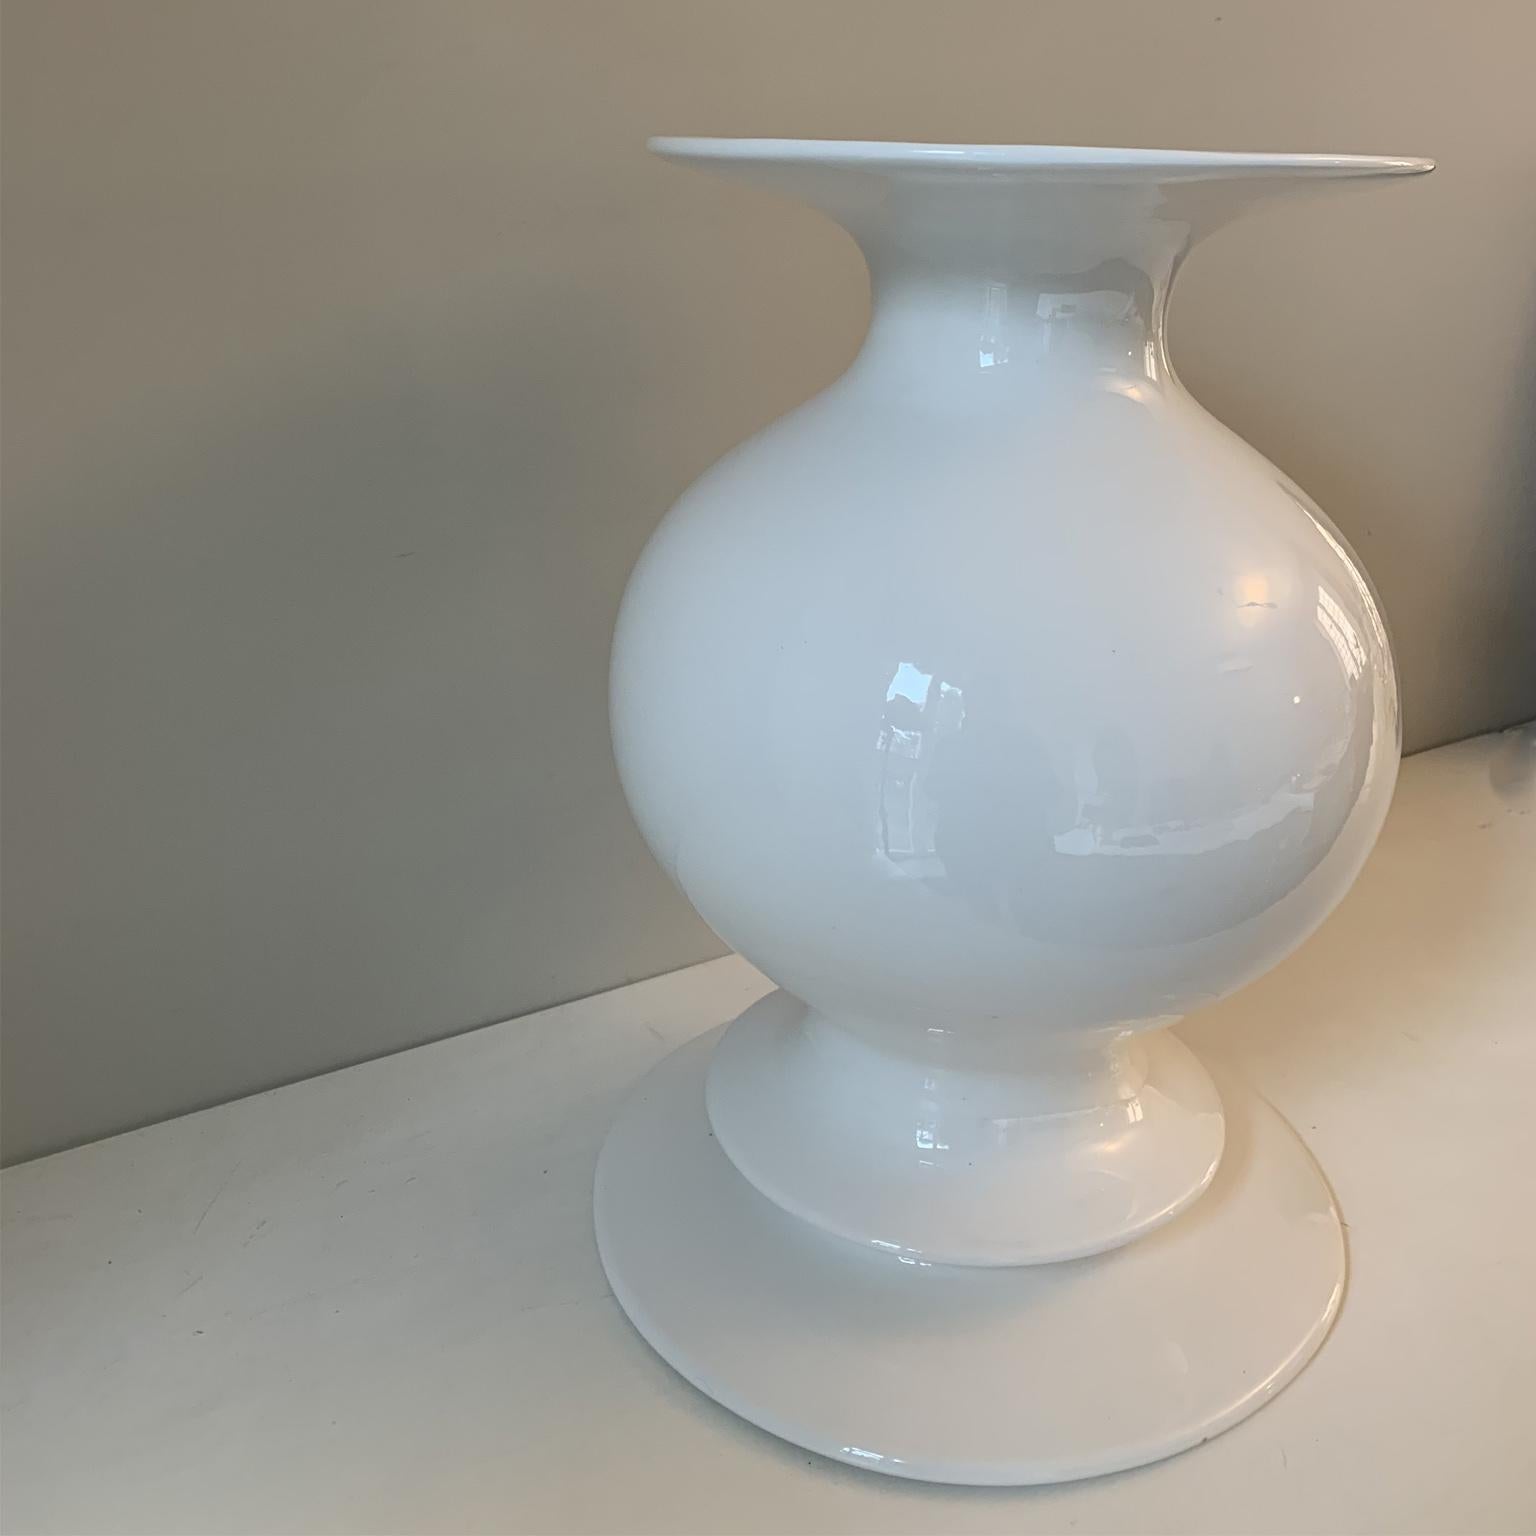 Diese Vase steht für den Beginn einer neuen Design-Ära für De Lucchi jenseits von Memphis. Dieser Neuanfang lässt sich am besten dadurch veranschaulichen, dass versehentlich alle entscheidenden Merkmale eines Memphis-Produkts aufgegeben werden. Ein